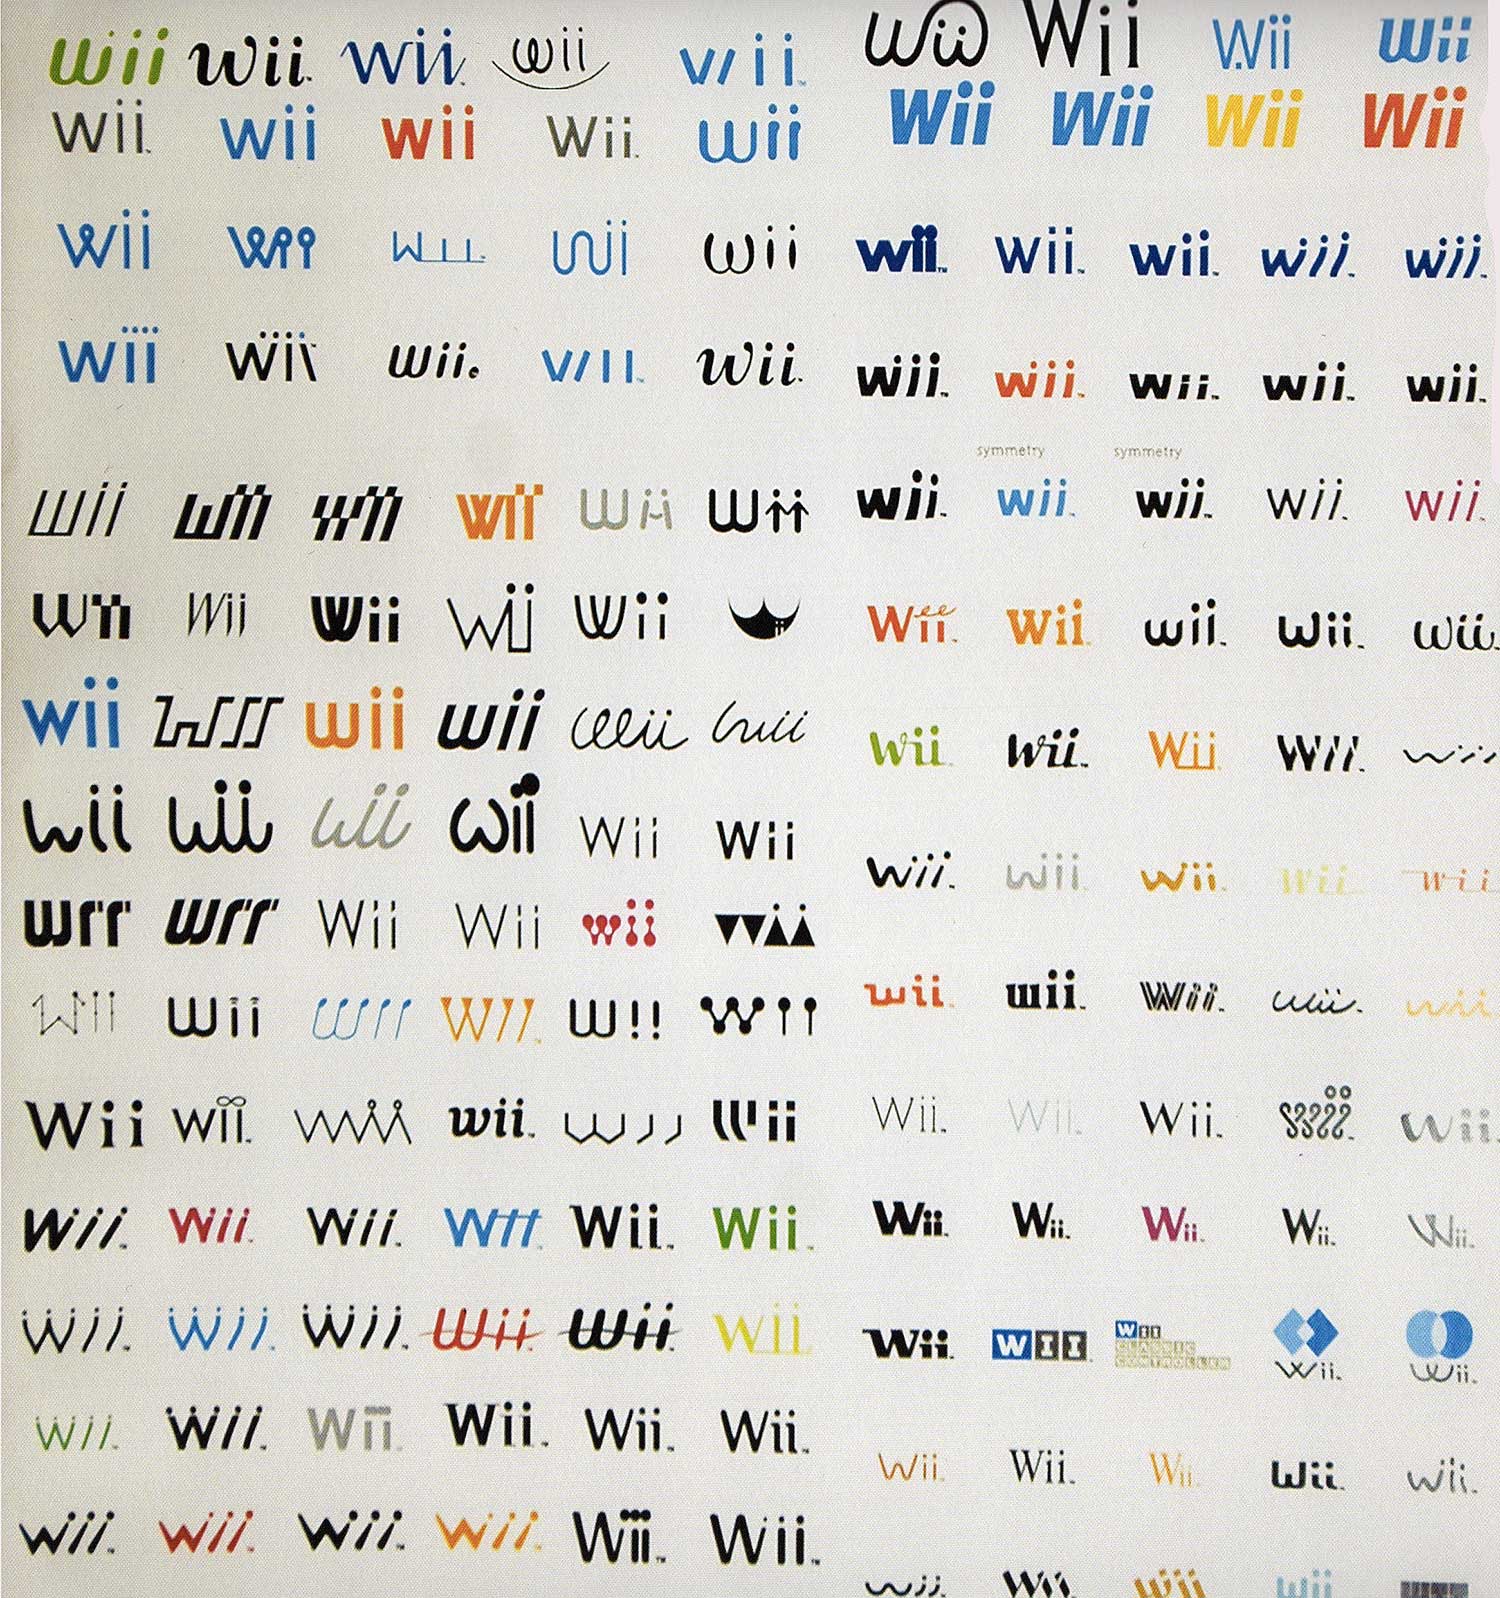 Explícitamente logo Decepcionado Unused Nintendo Wii logos include some serious design crimes | Creative Bloq